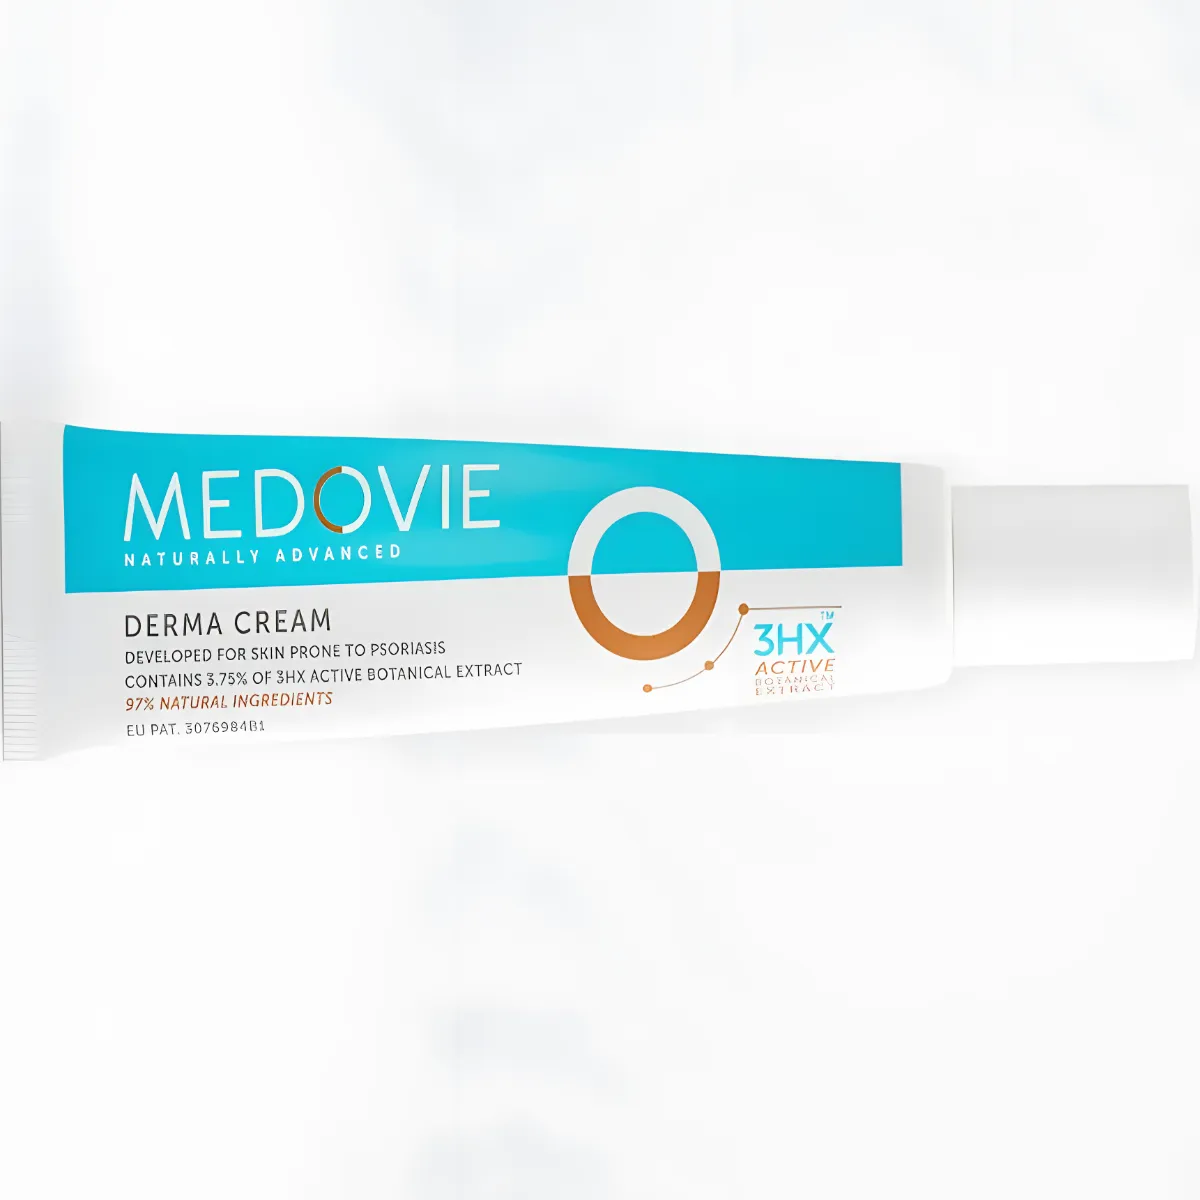 Free Medovie 3HX™ Derma Cream